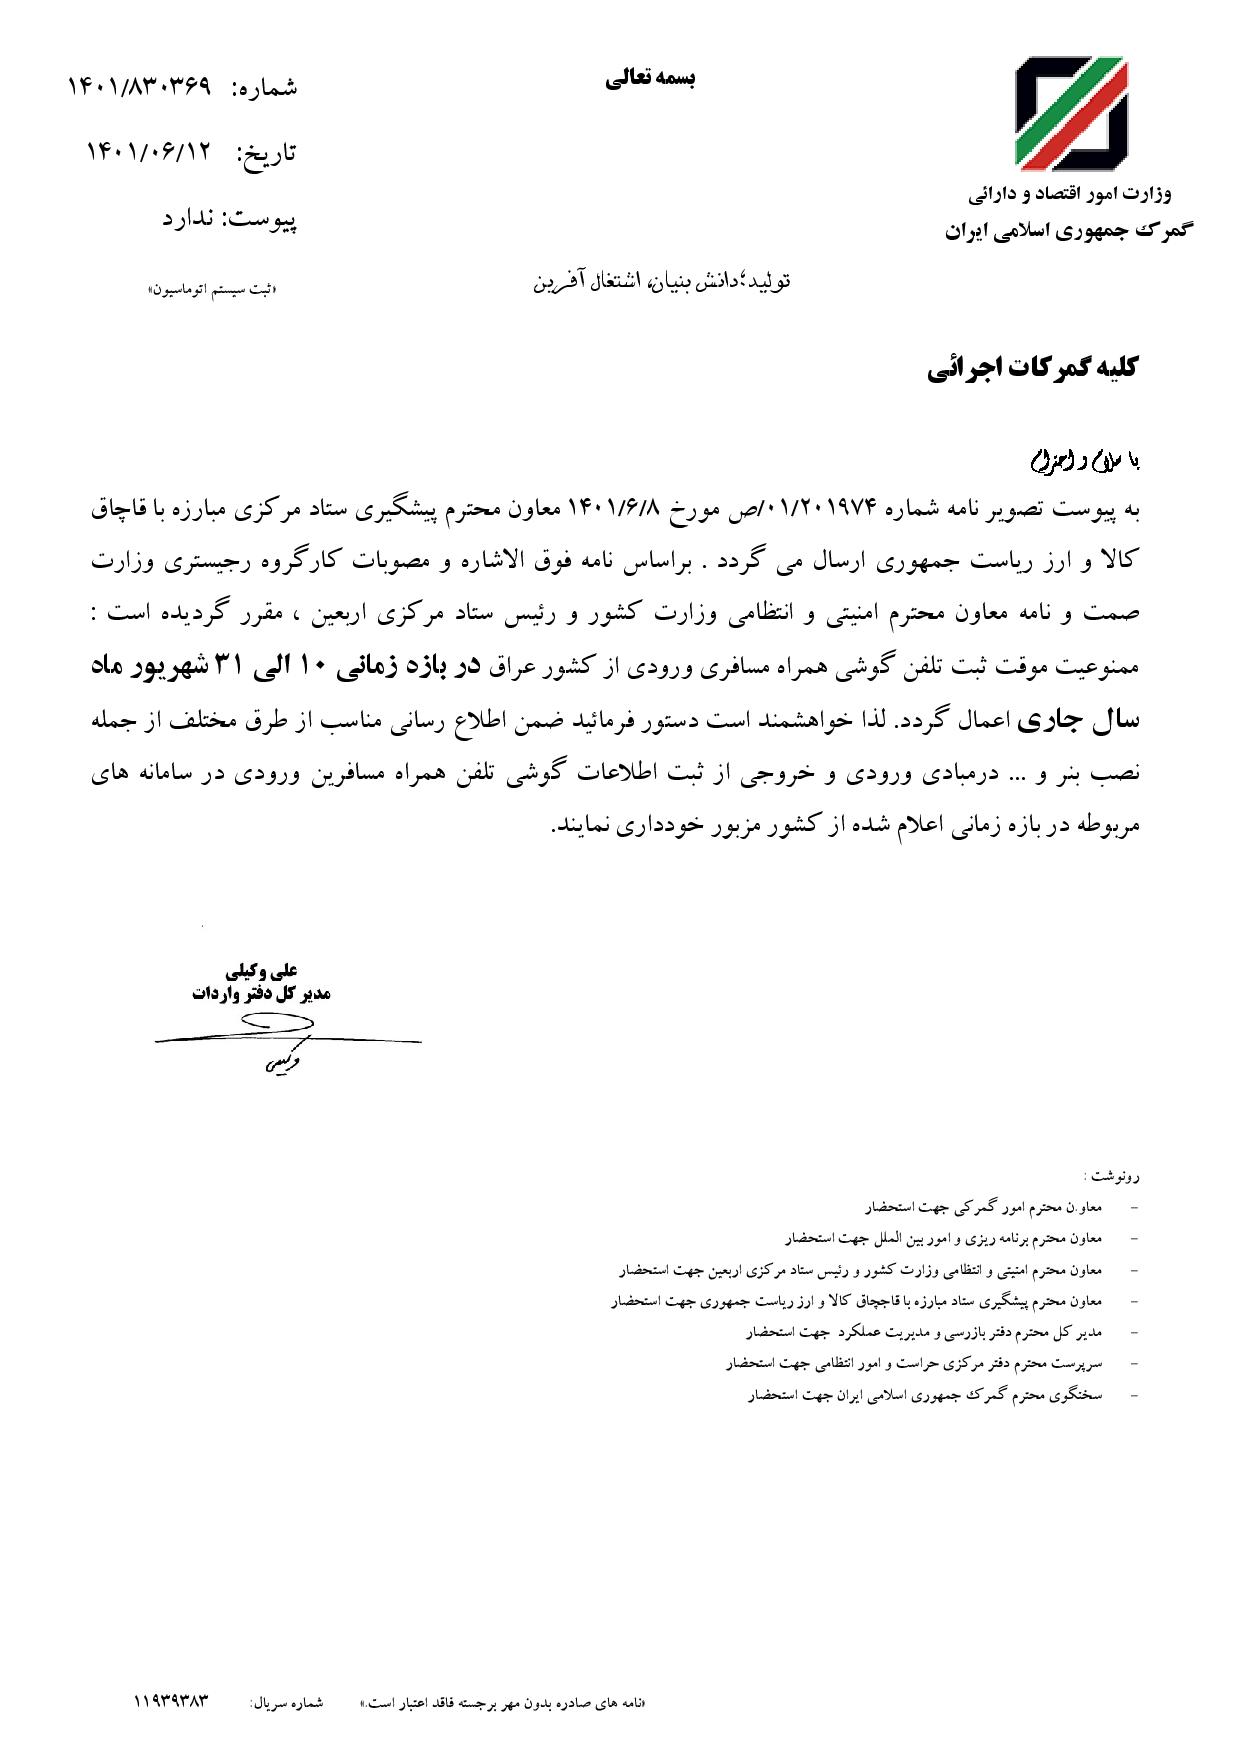 بخشنامه در خصوص ممنوعیت واردات مسافری گوشی تلفن همراه از عراق تا آخر شهریور ماه 1401